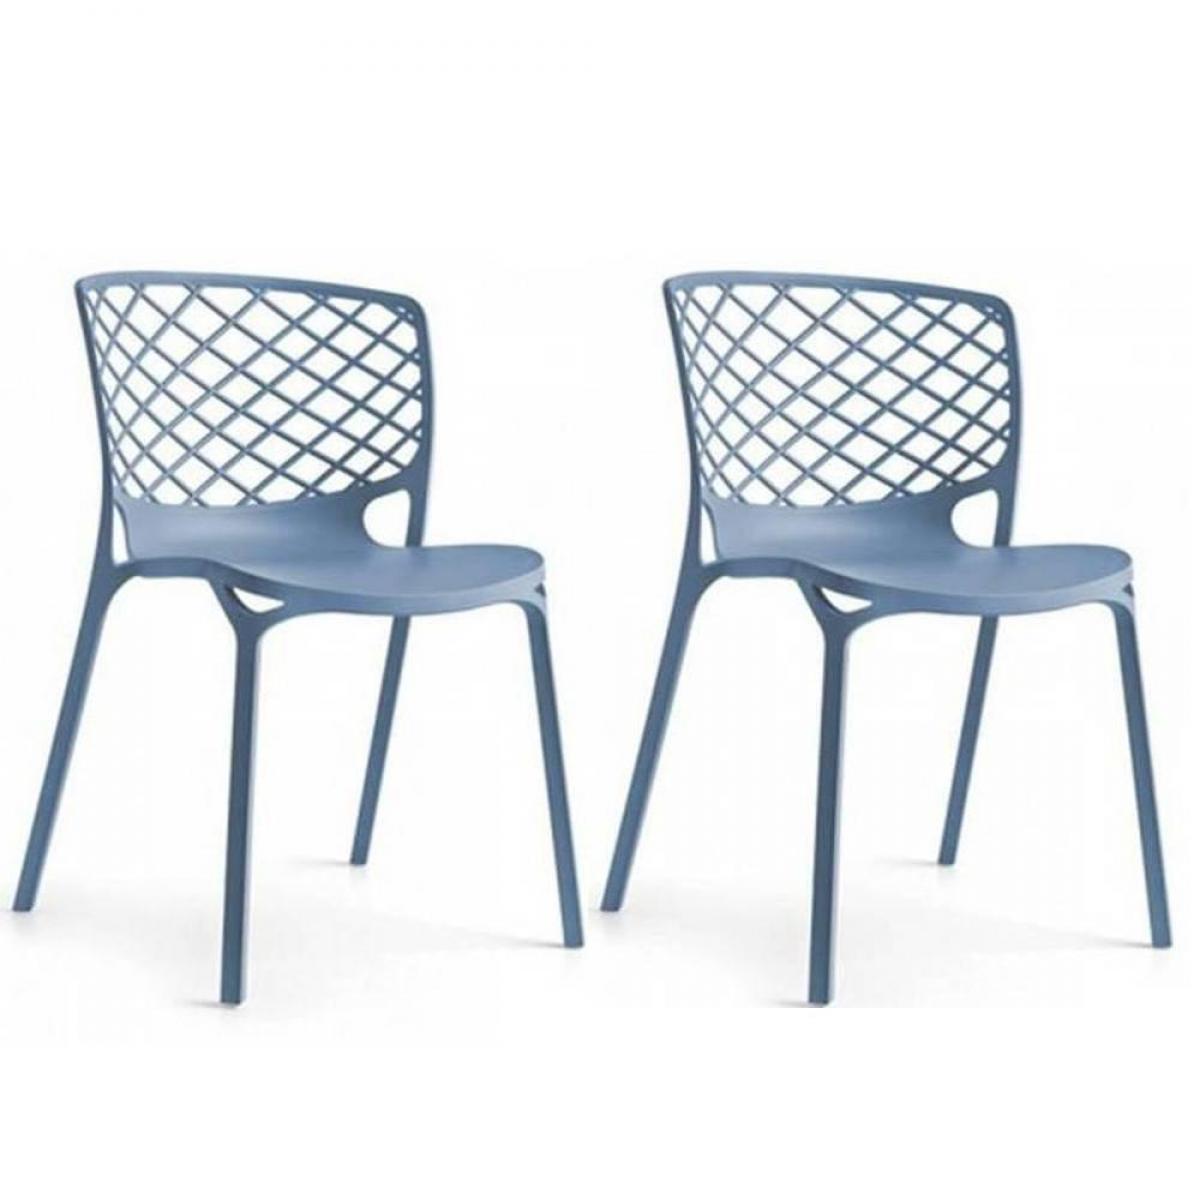 Inside 75 - Lot de 2 chaises empilable GAMERA bleu ciel - Chaises